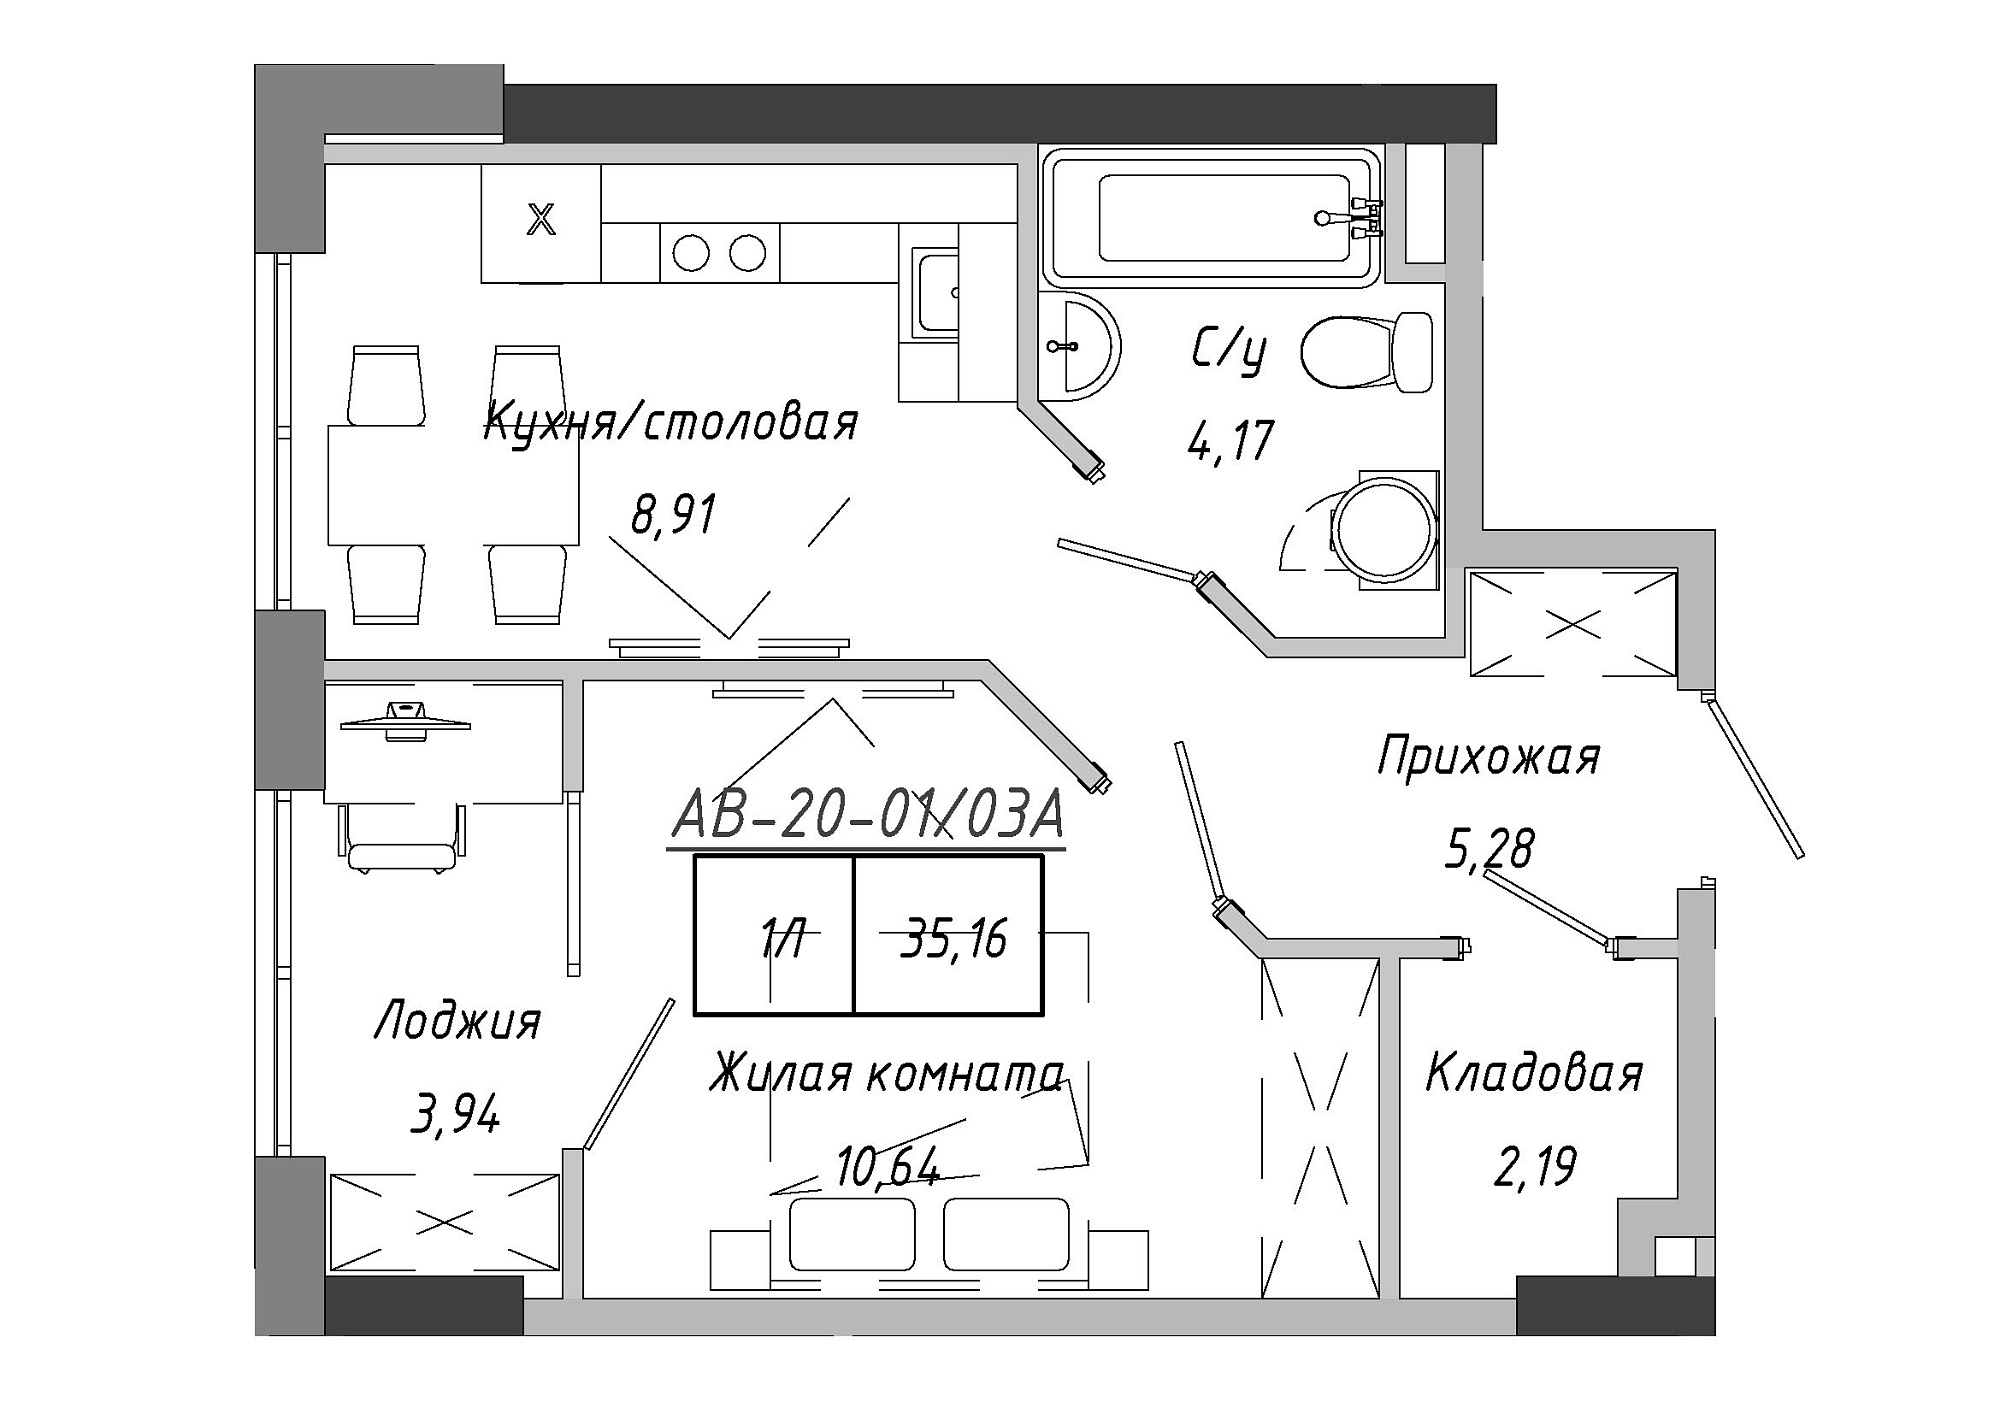 Планування 1-к квартира площею 35.16м2, AB-20-01/0003а.